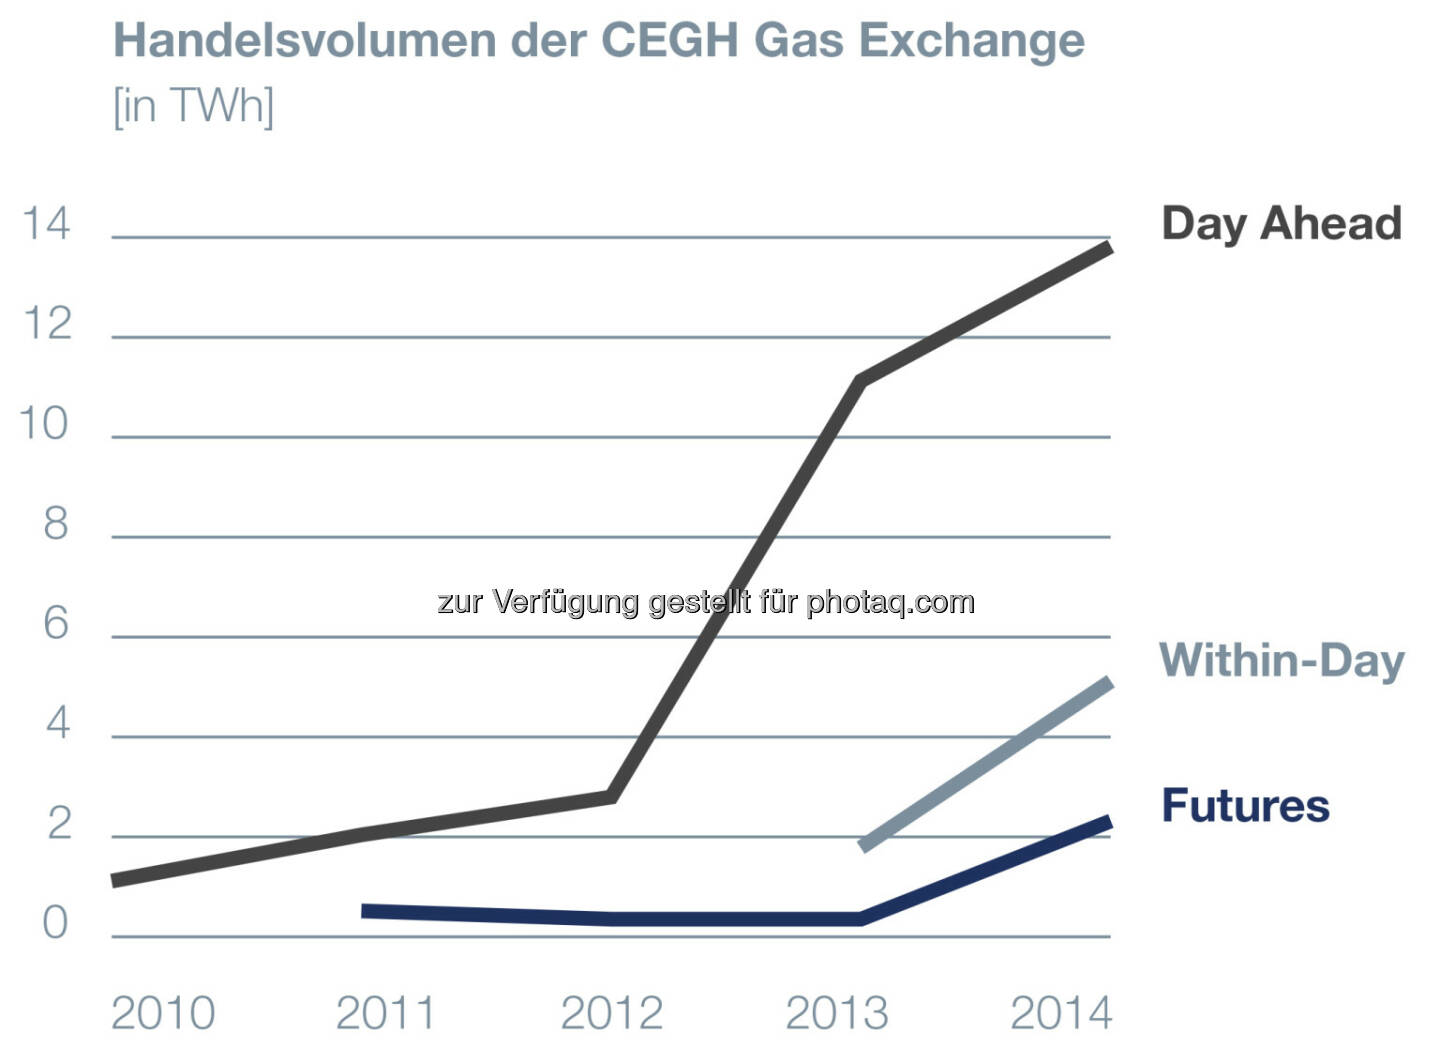 Central European Gas Hub: Börsevolumina 2014 um 61% gestiegen!